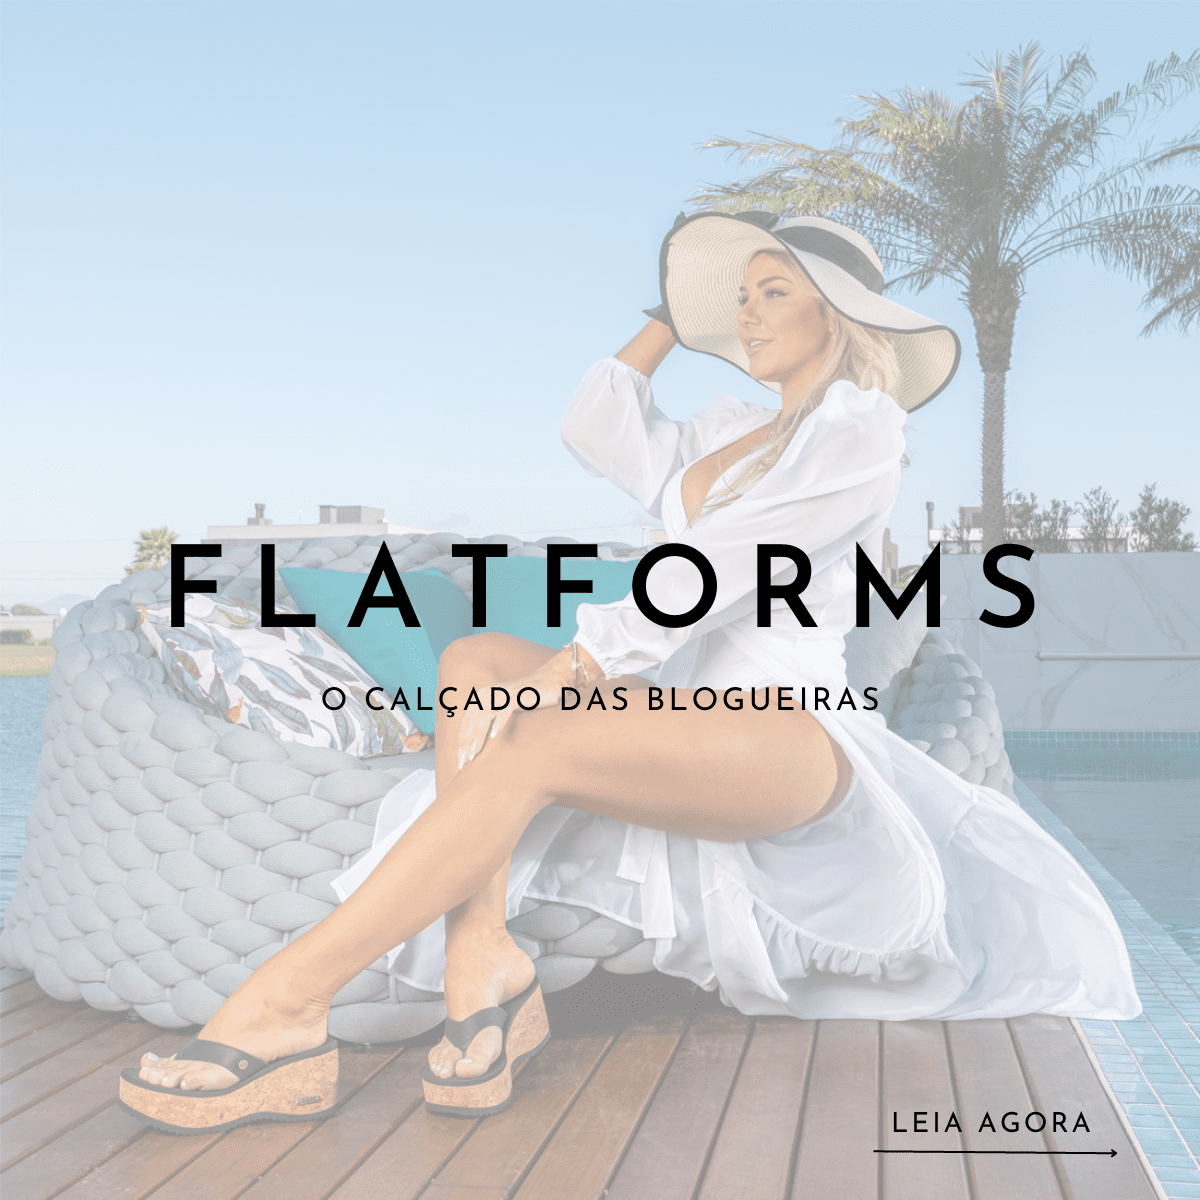 Flatform: Conheça o calçado que virou hit entre as blogueiras 